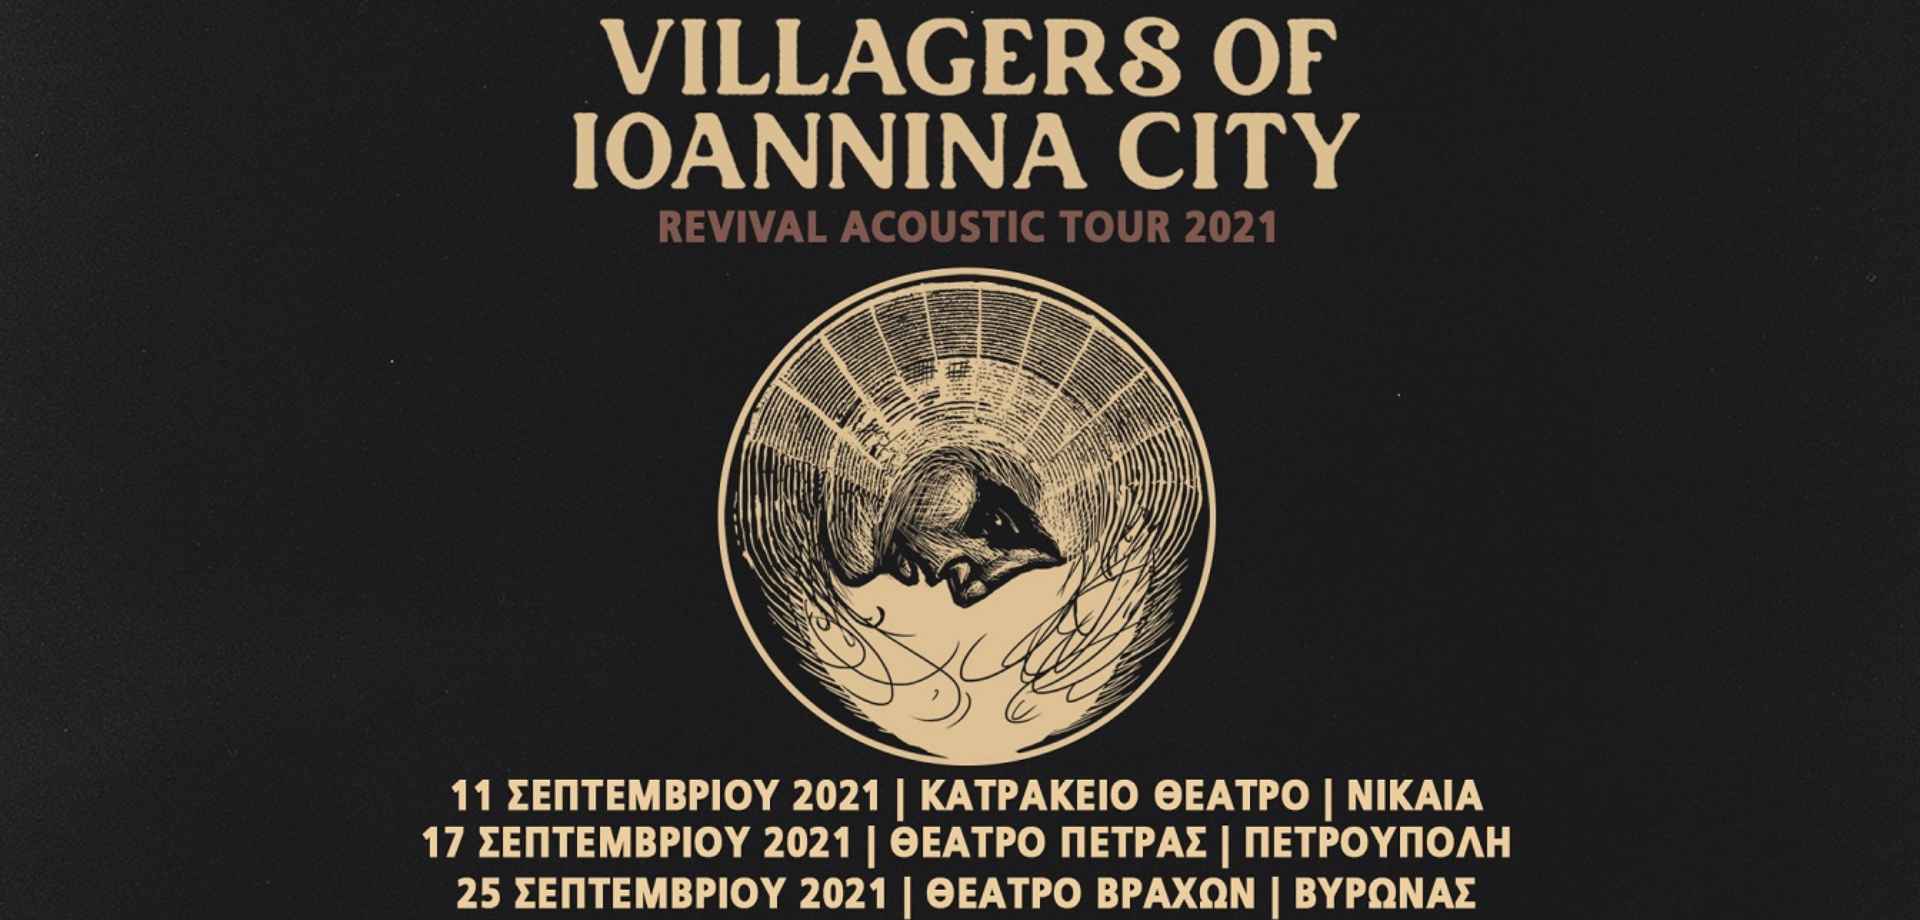 Villagers of Ioannina City